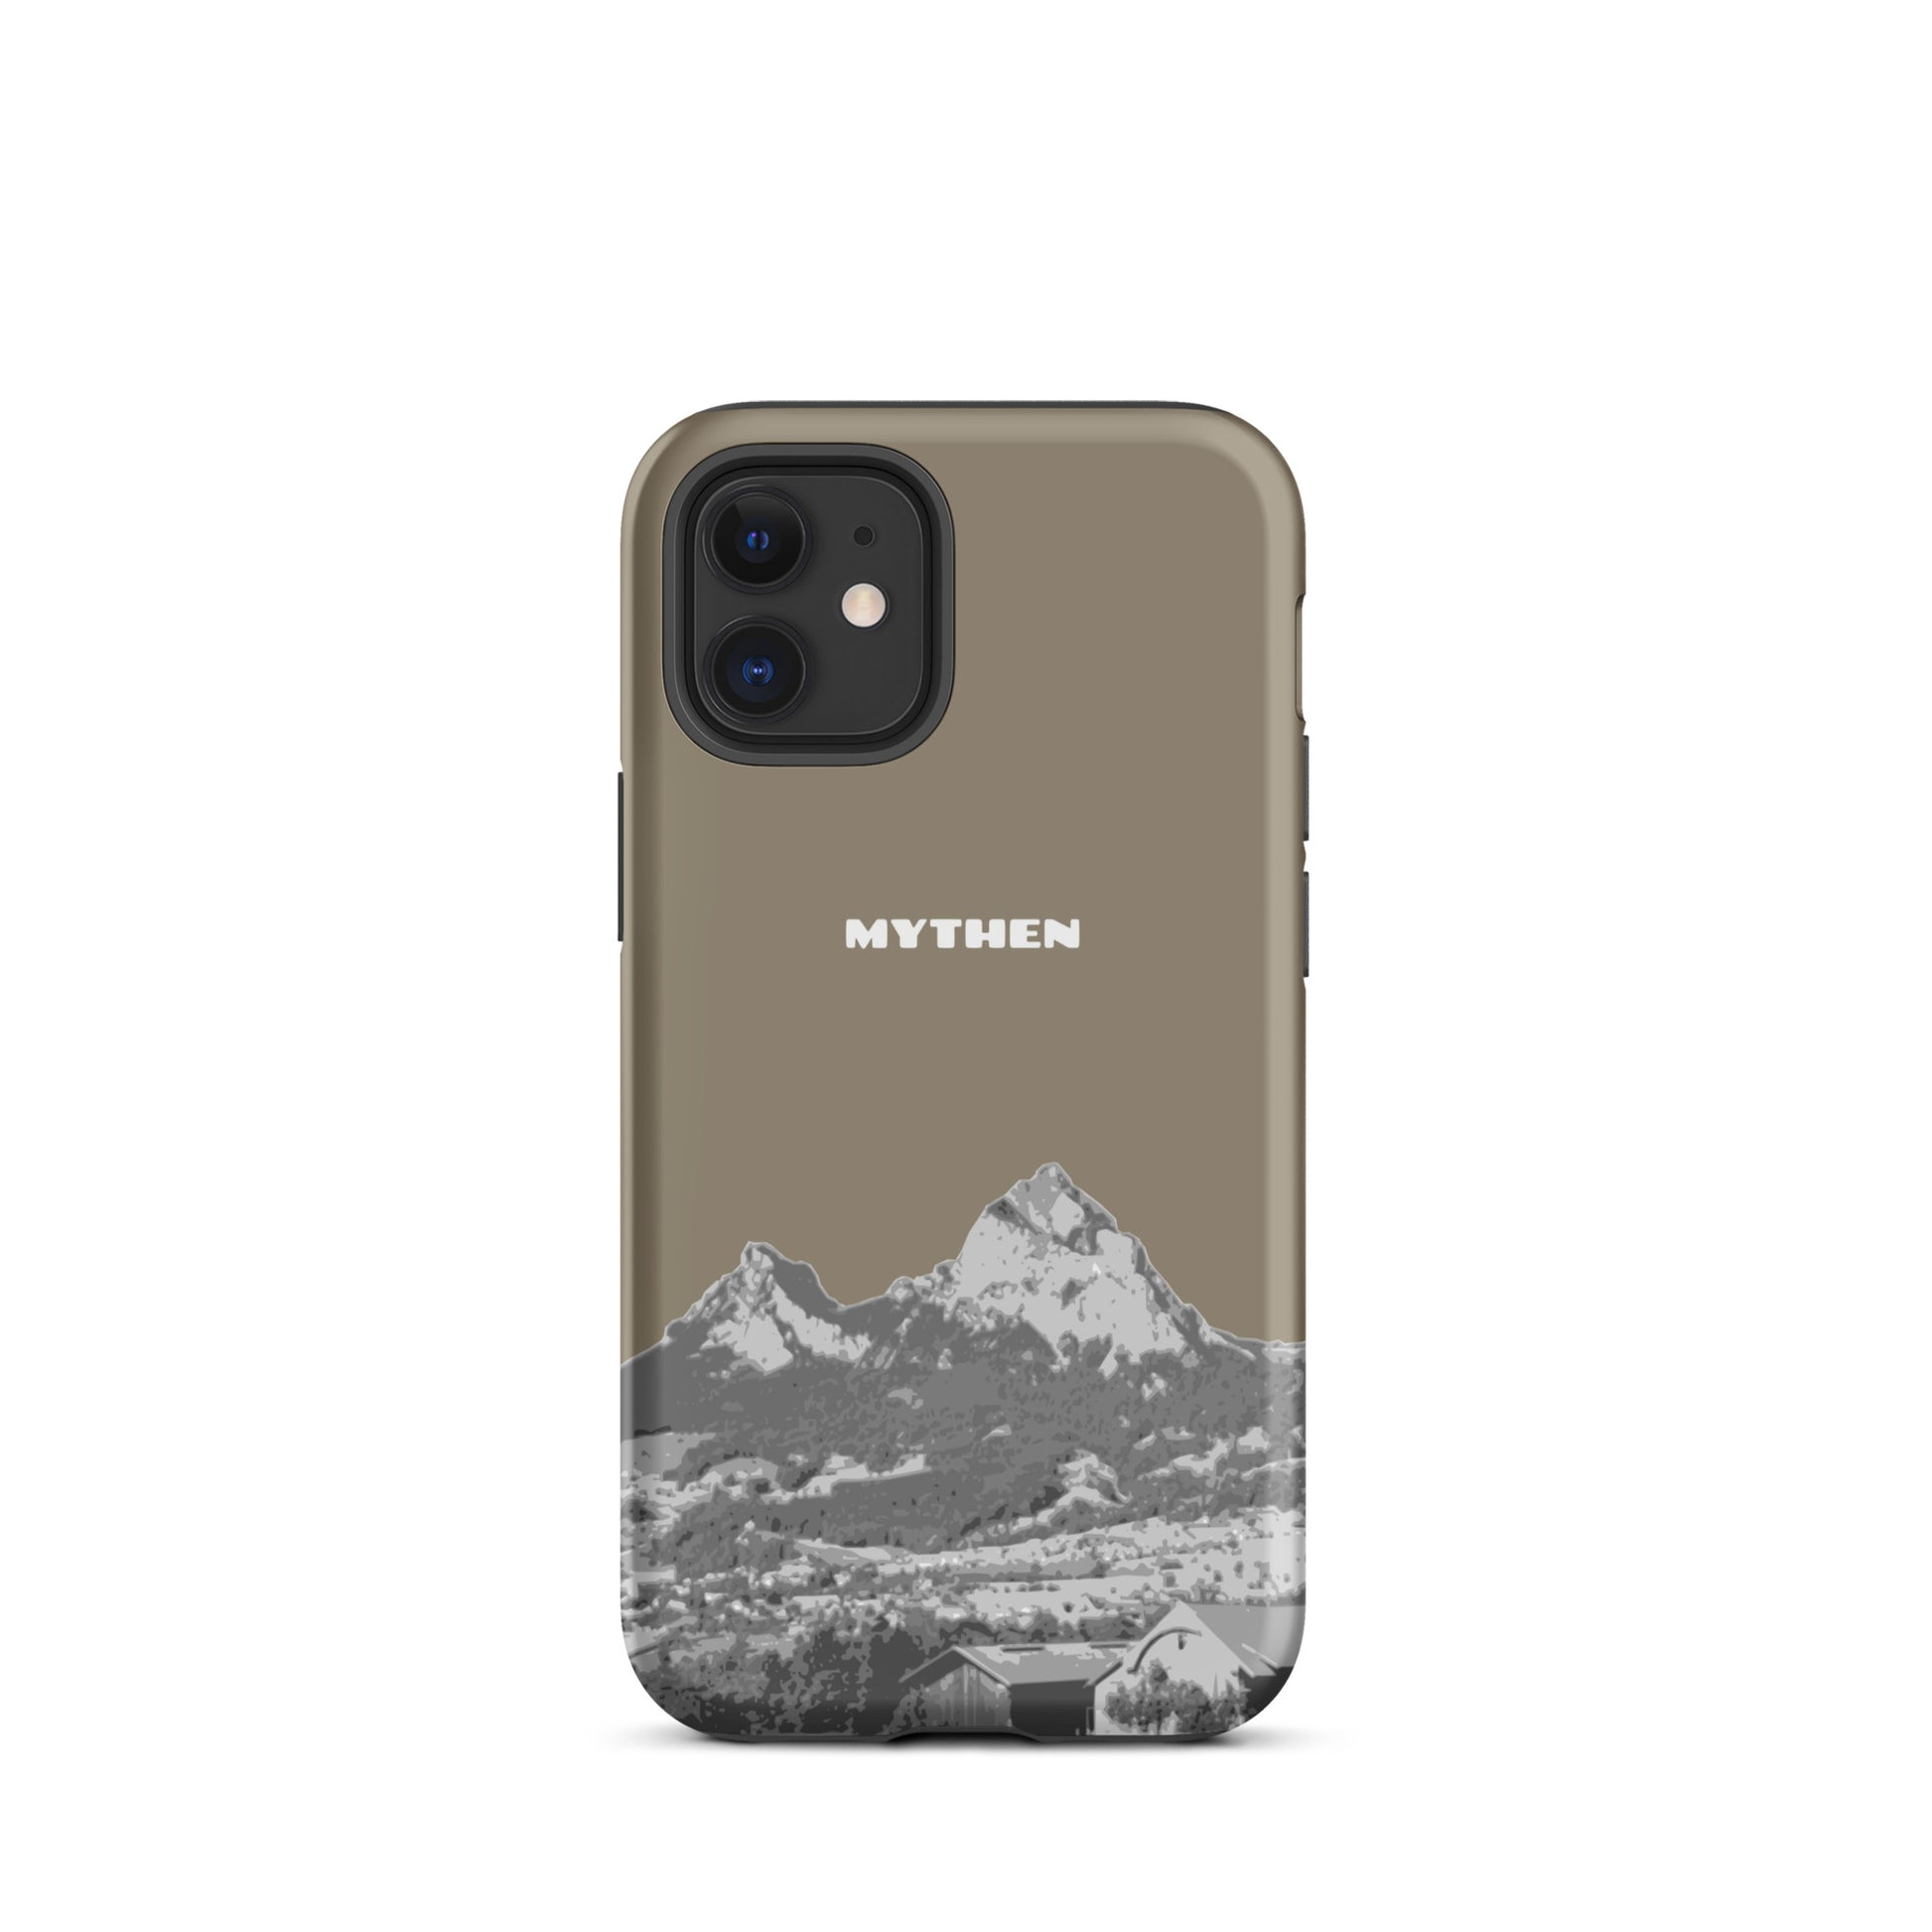 Hülle für das iPhone 12 mini von Apple in der Farbe Graubraun, dass den Grossen Mythen und den Kleinen Mythen bei Schwyz zeigt. 